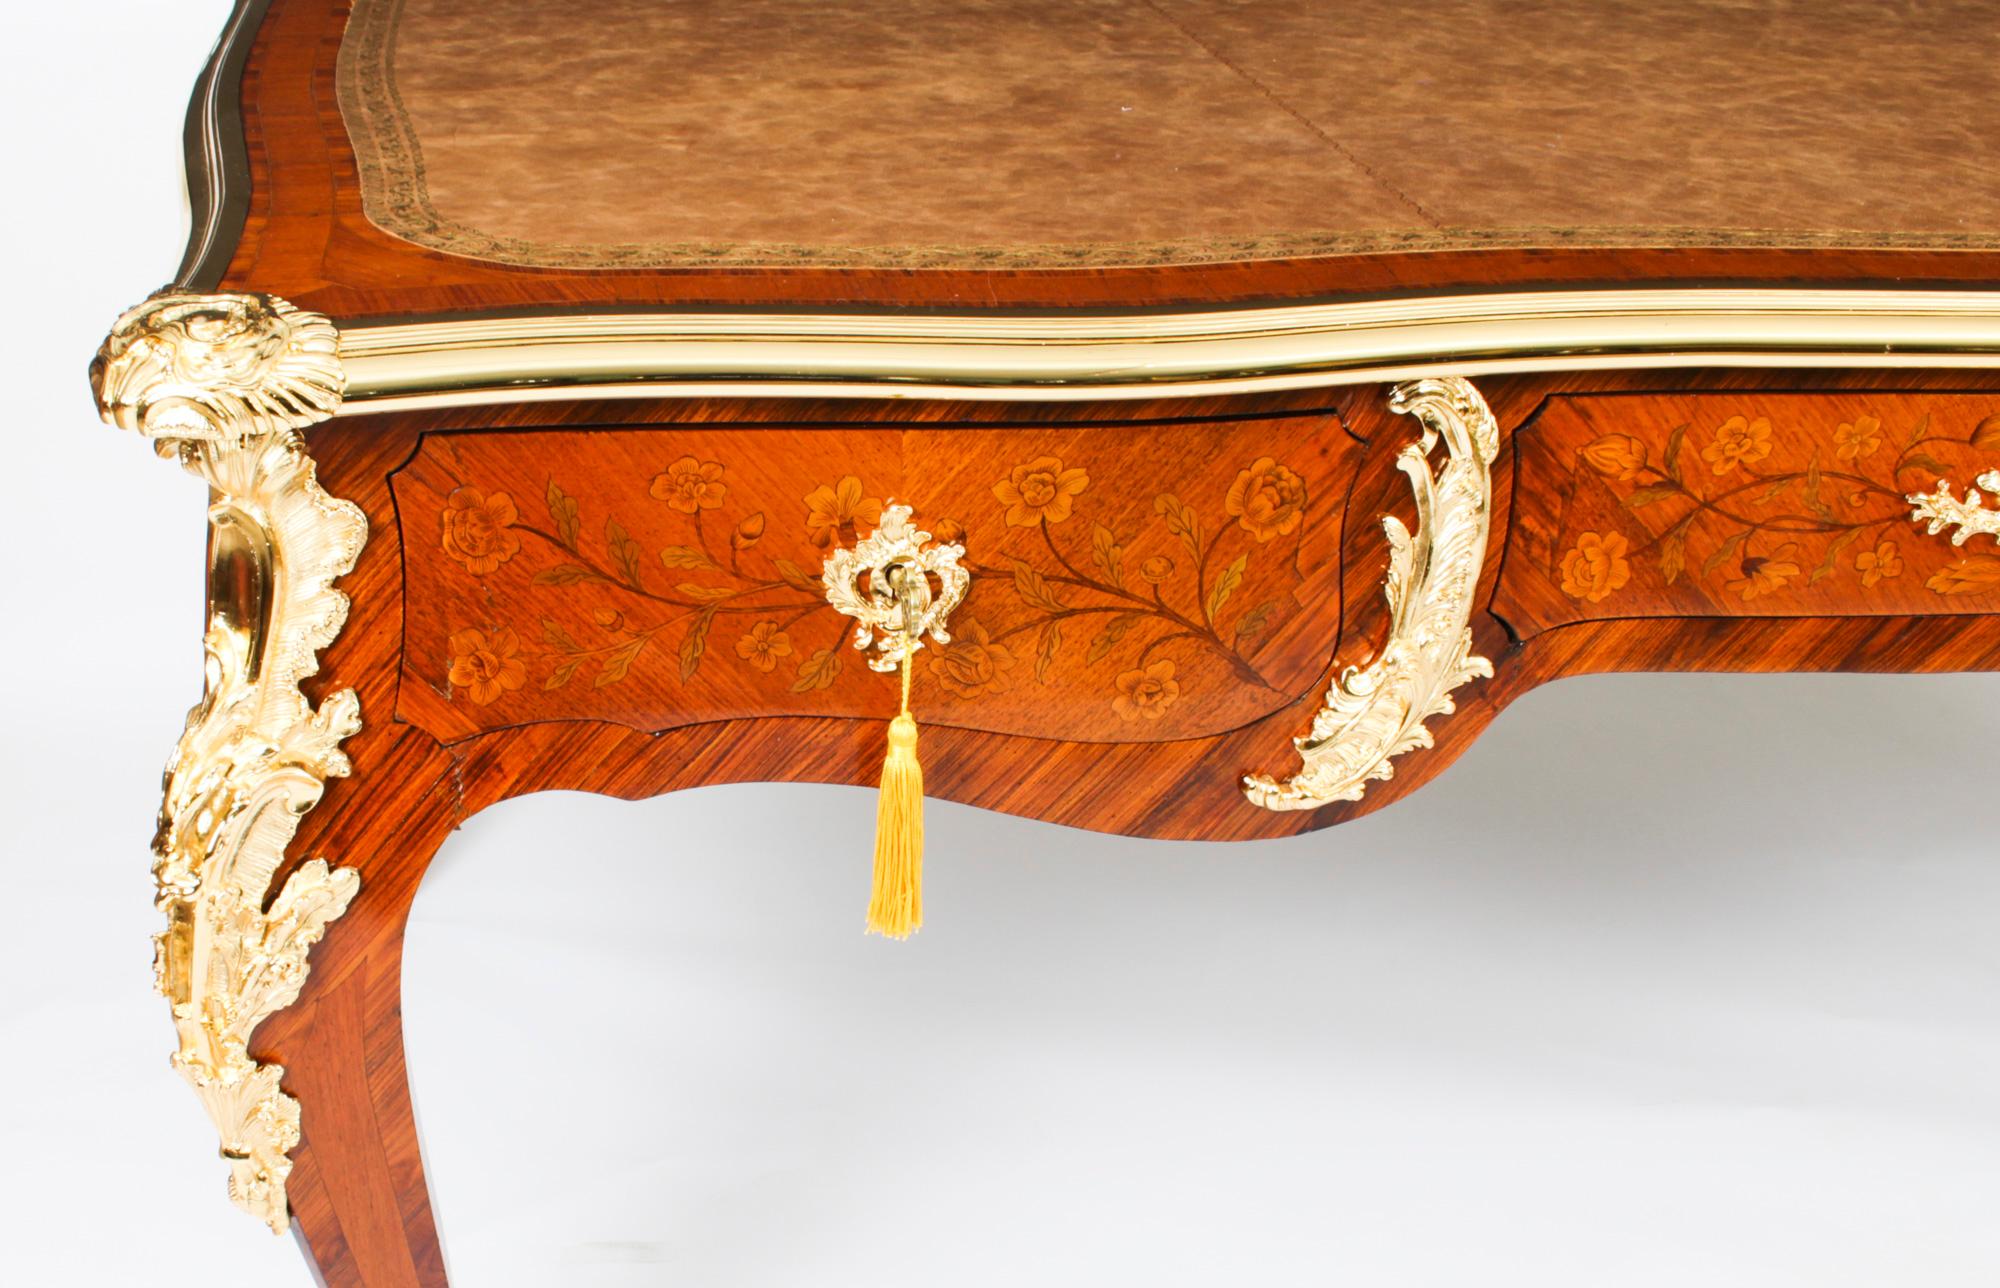 Late 18th Century Antique Ormolu Mounted Bureau Plat Desk Hopilliart Paris 18th Century